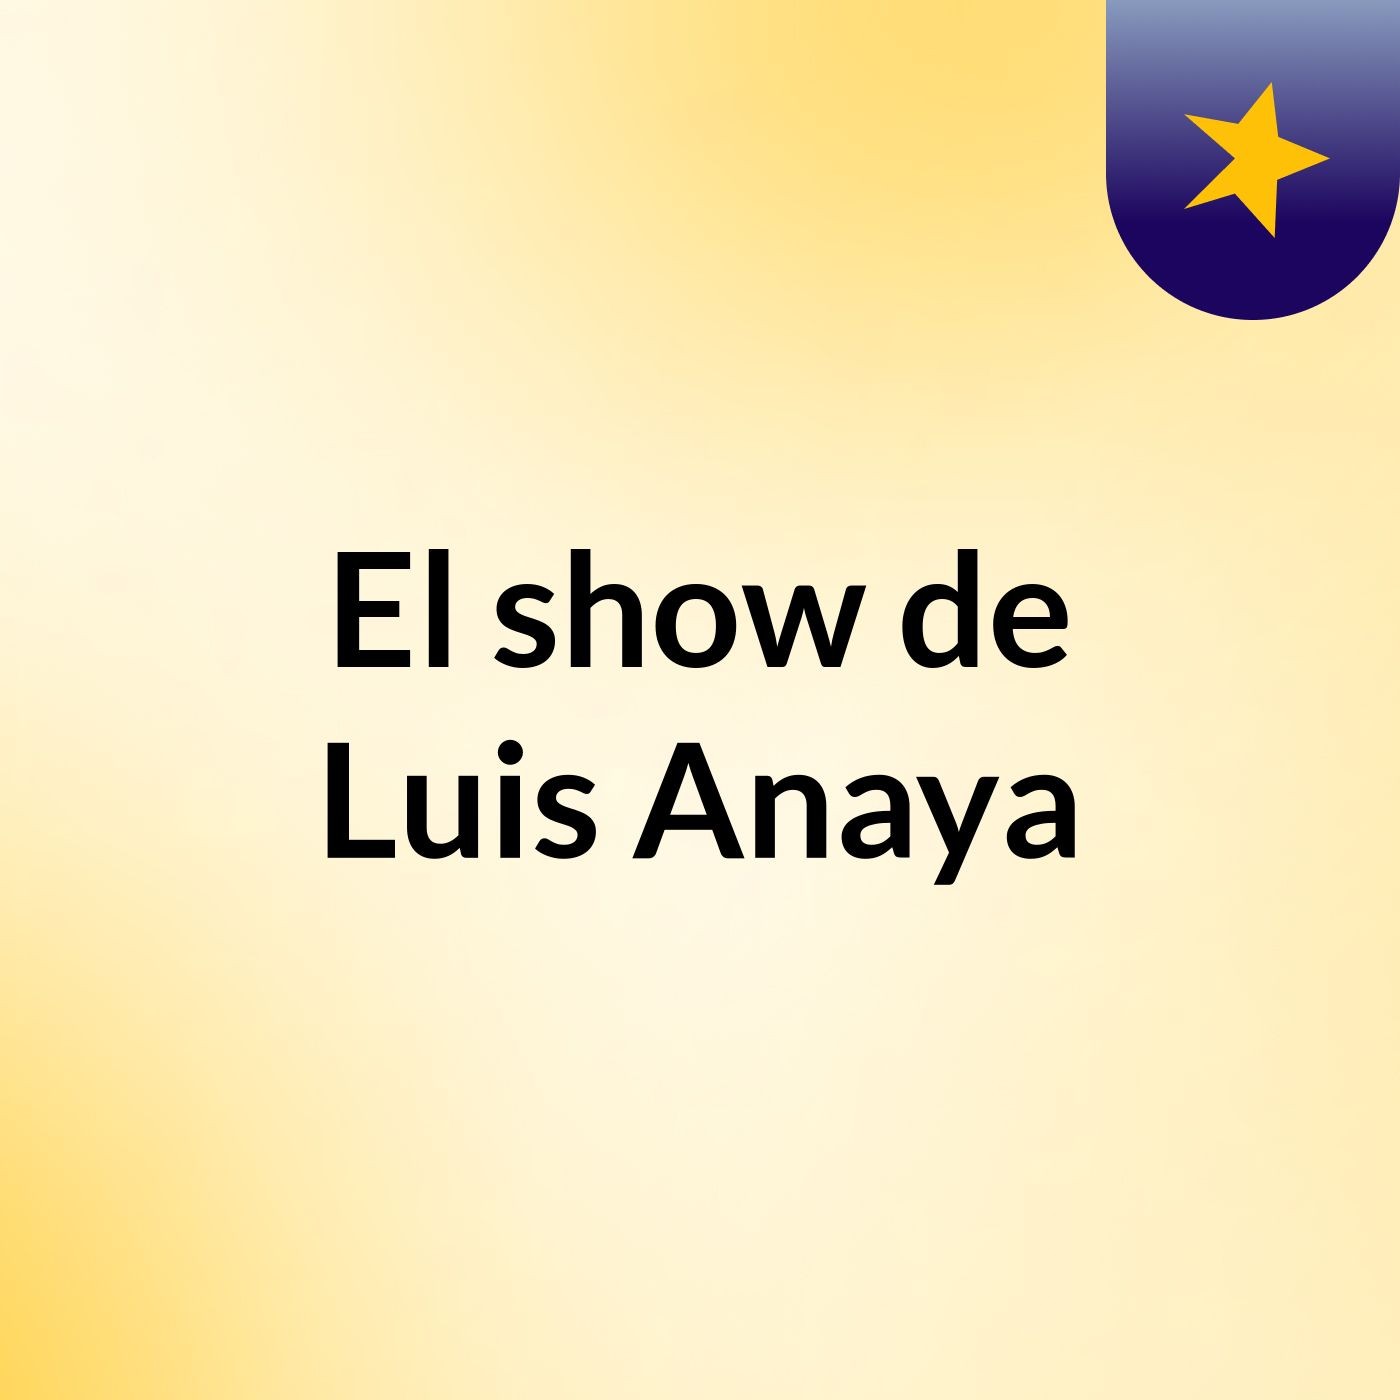 El show de Luis Anaya